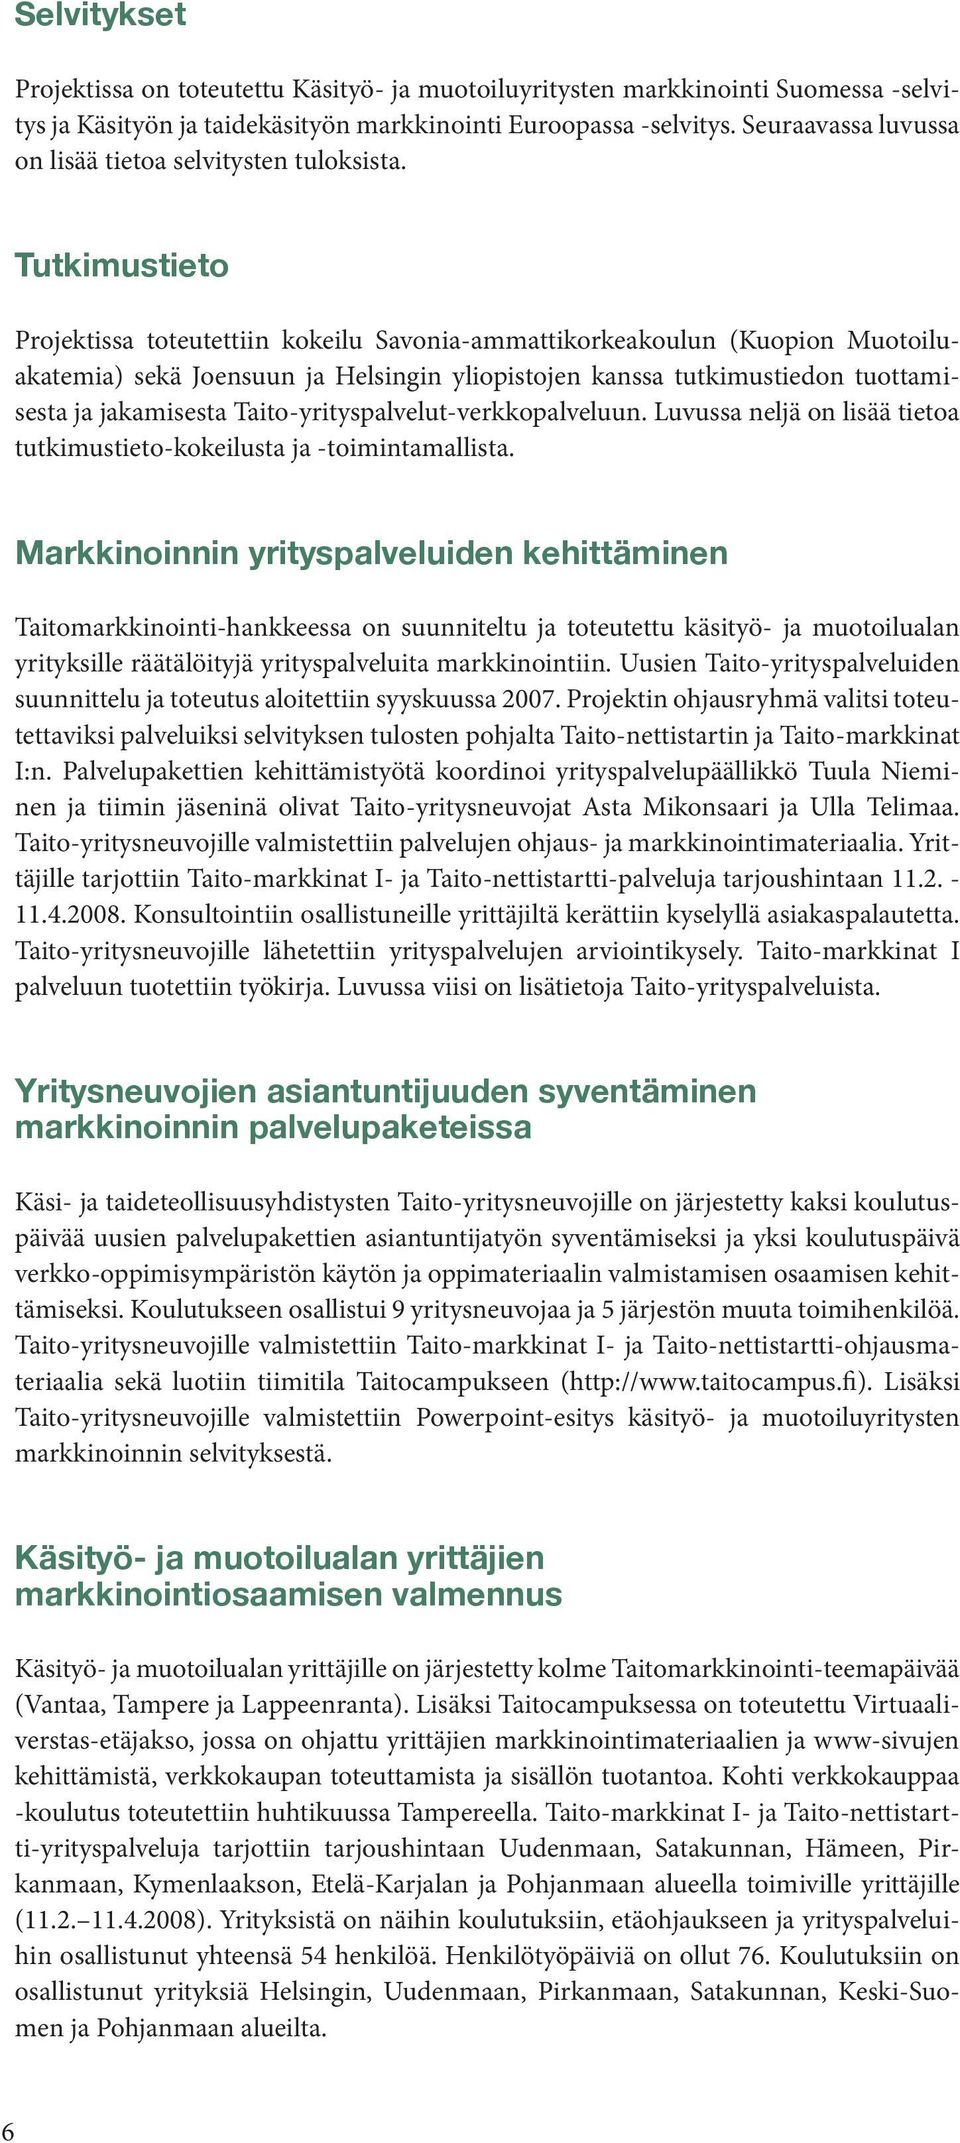 Tutkimustieto Projektissa toteutettiin kokeilu Savonia-ammattikorkeakoulun (Kuopion Muotoiluakatemia) sekä Joensuun ja Helsingin yliopistojen kanssa tutkimustiedon tuottamisesta ja jakamisesta